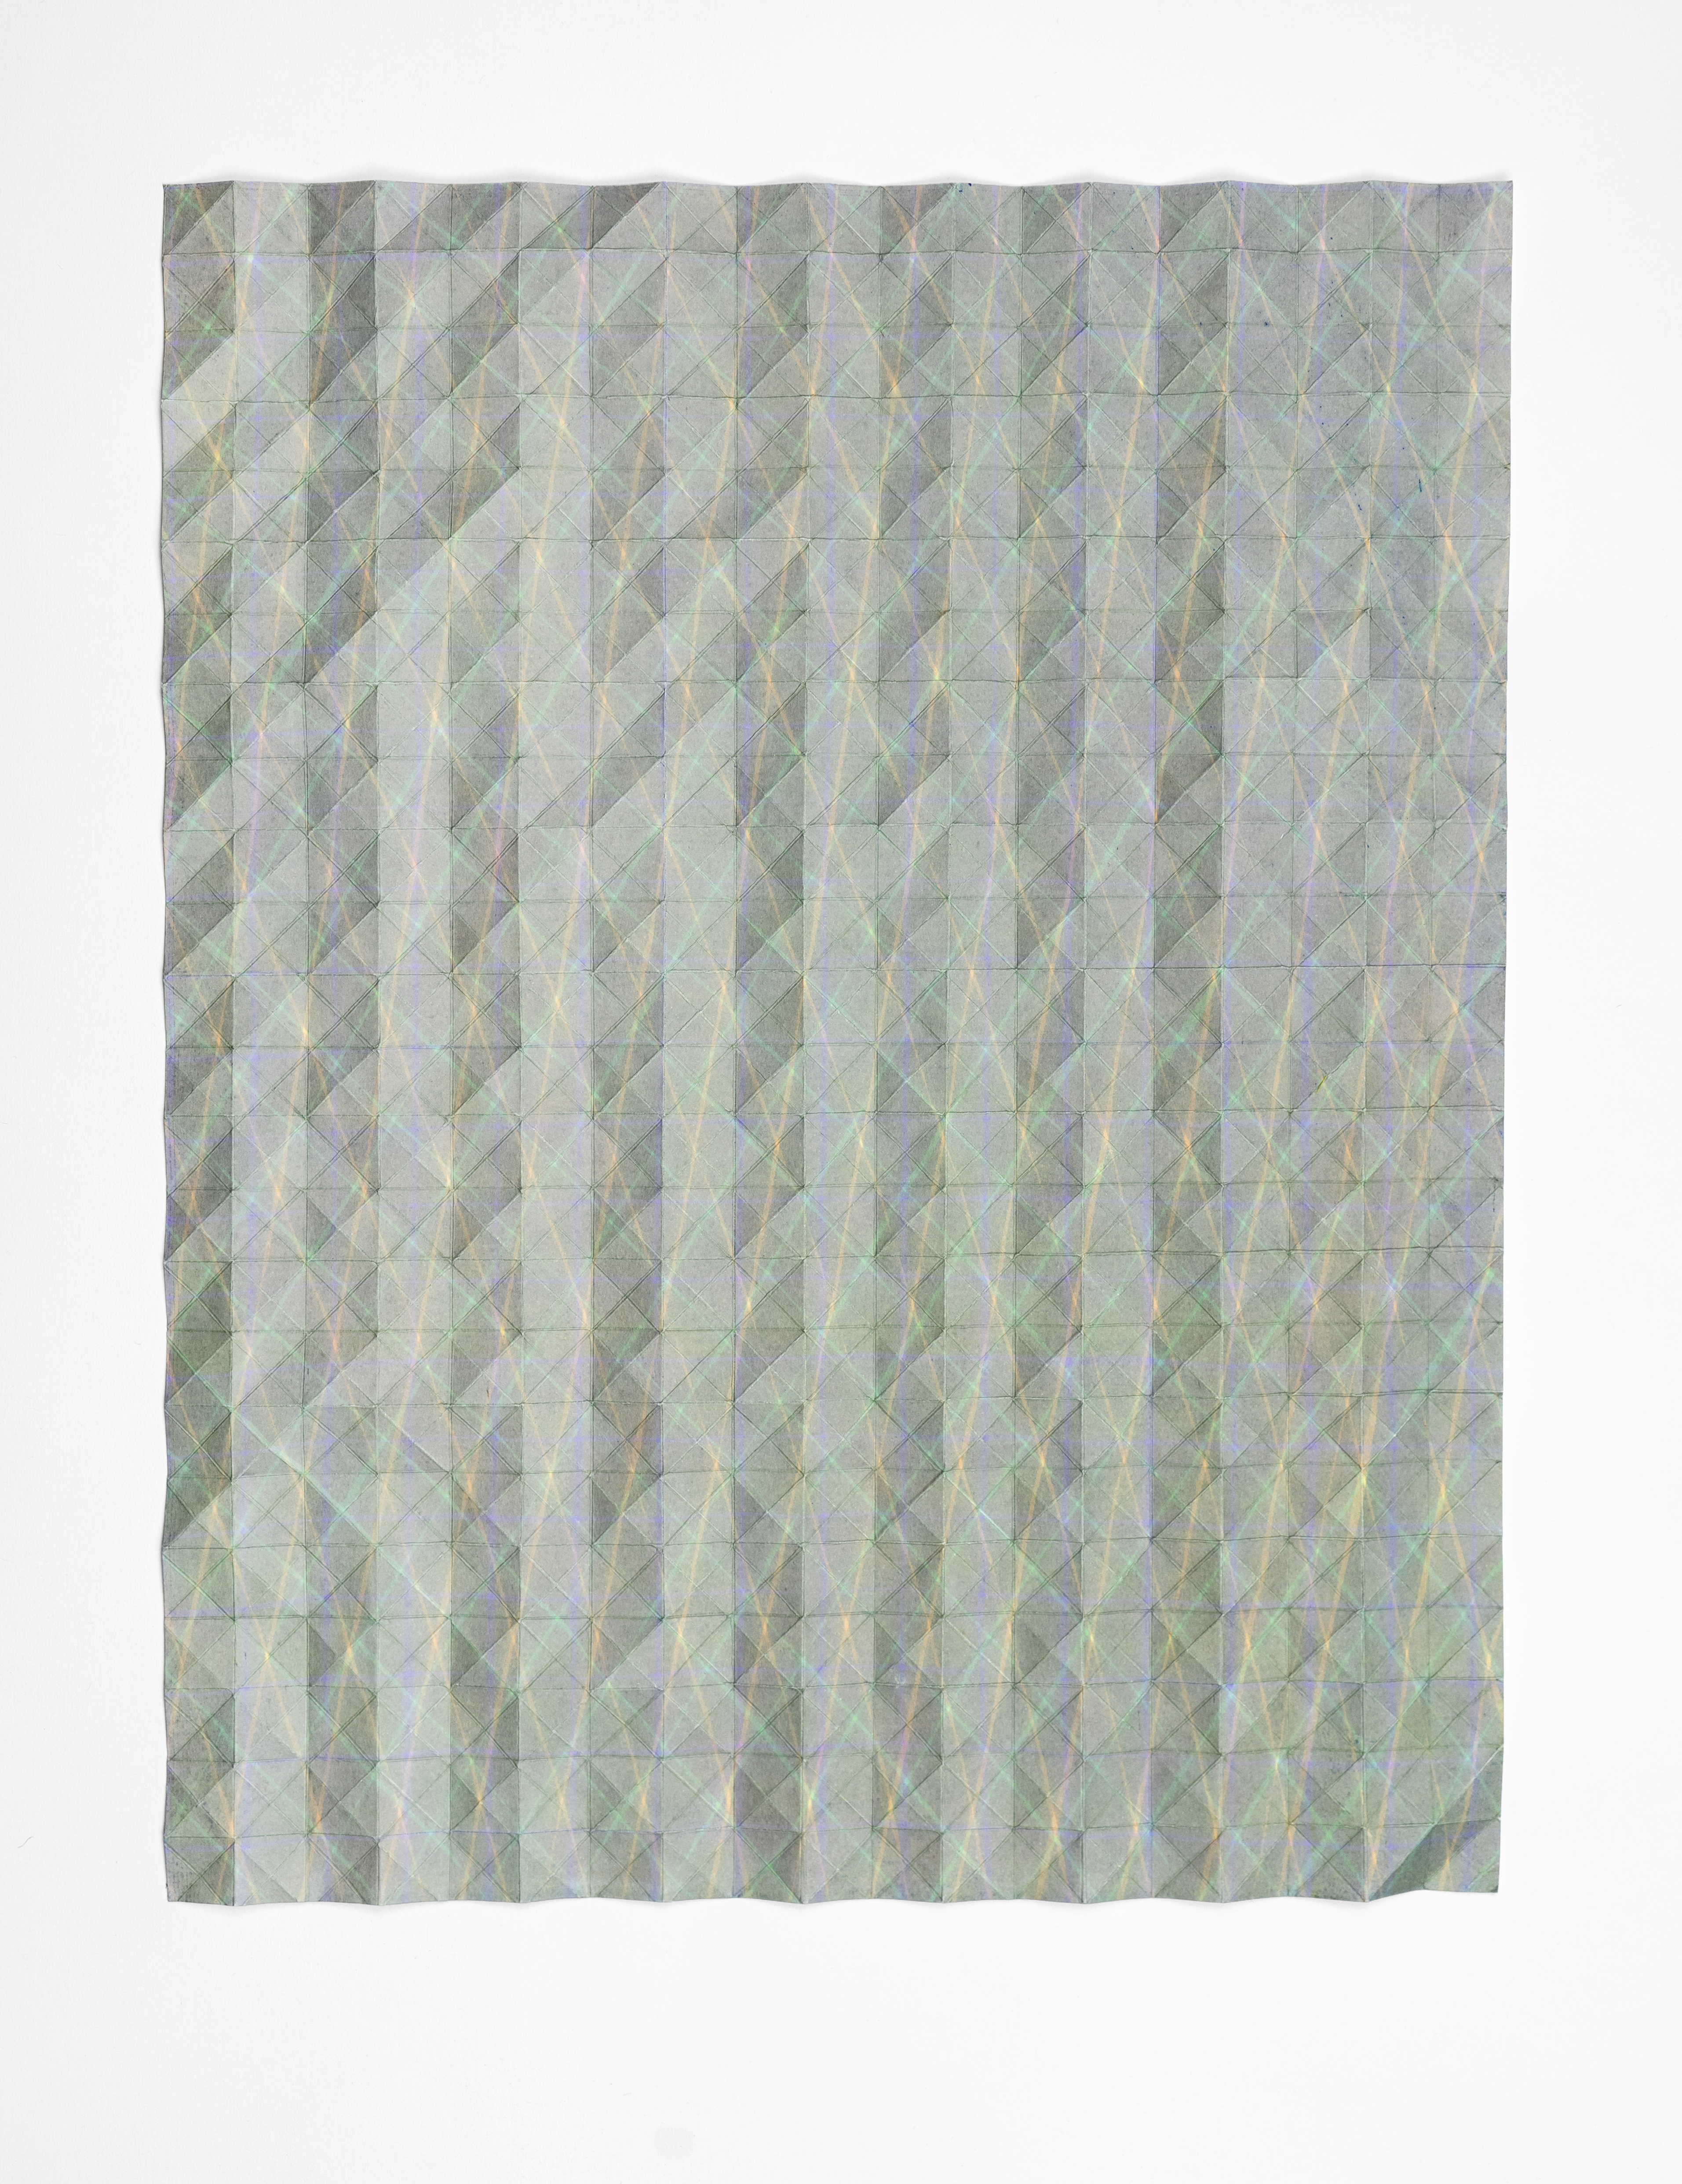 LUISE VON ROHDEN Faltung (6d grb/l) (Detail), 2020, farbige Tusche und Faltung auf Papier, 78 x 58 cm